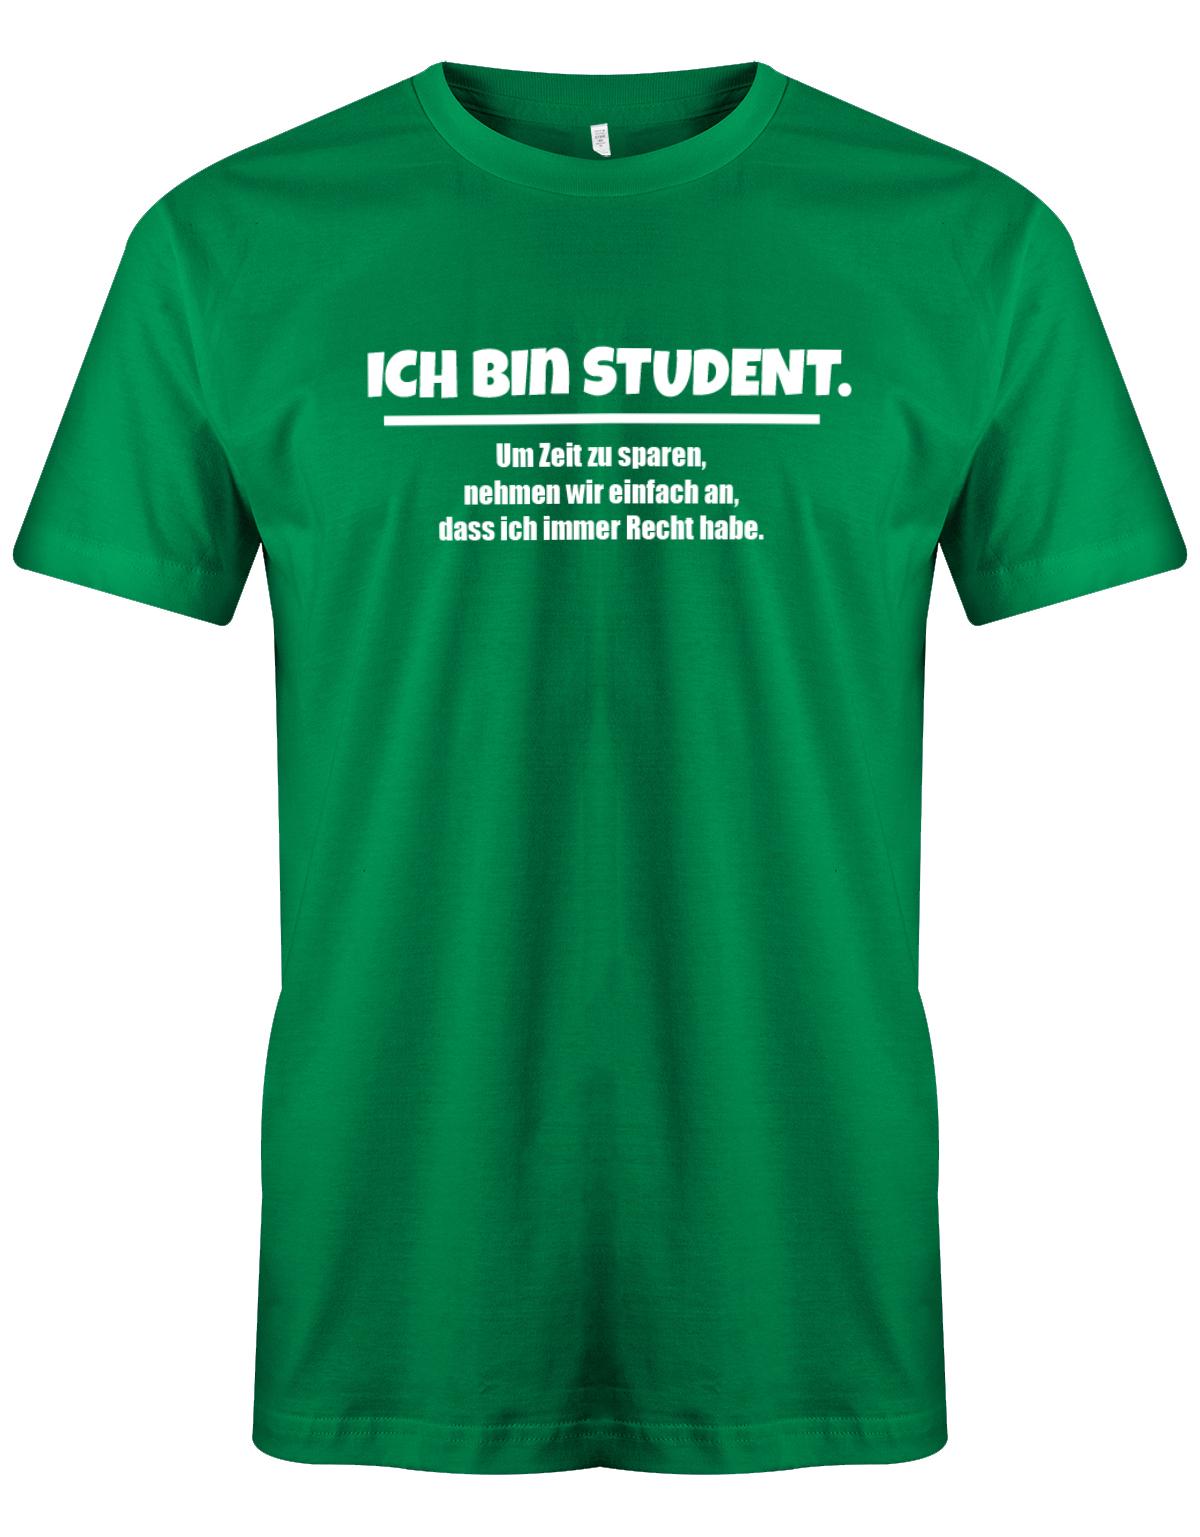 Ich-bin-Student-um-zeot-zu-sparen-habe-ich-recht-Herren-Spr-che-Studium-Shirt-Gr-n